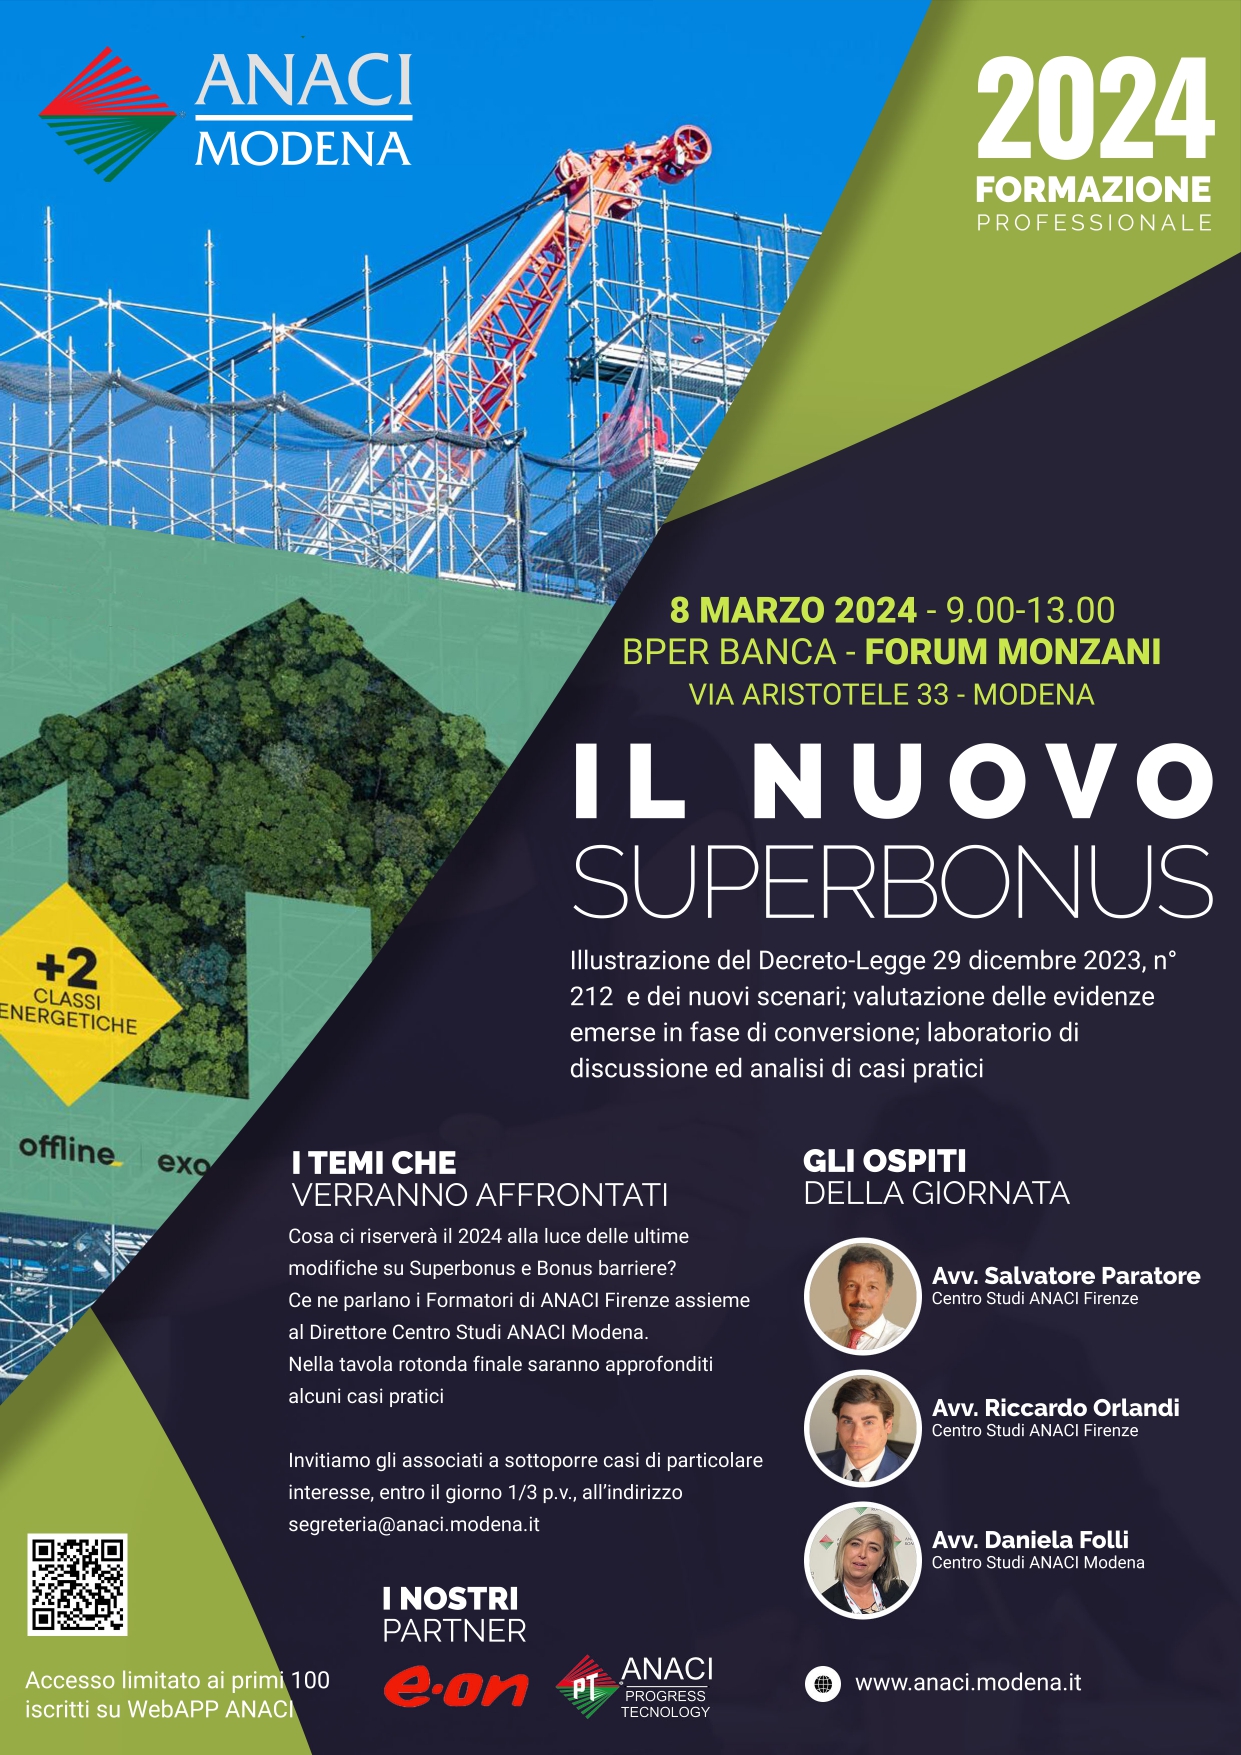 𝐂𝐨𝐧𝐯𝐞𝐠𝐧𝐨 𝐨𝐫𝐠𝐚𝐧𝐢𝐳𝐳𝐚𝐭𝐨 𝐝𝐚 𝐀𝐍𝐀𝐂𝐈 Modena “il Nuovo SuperBonus”